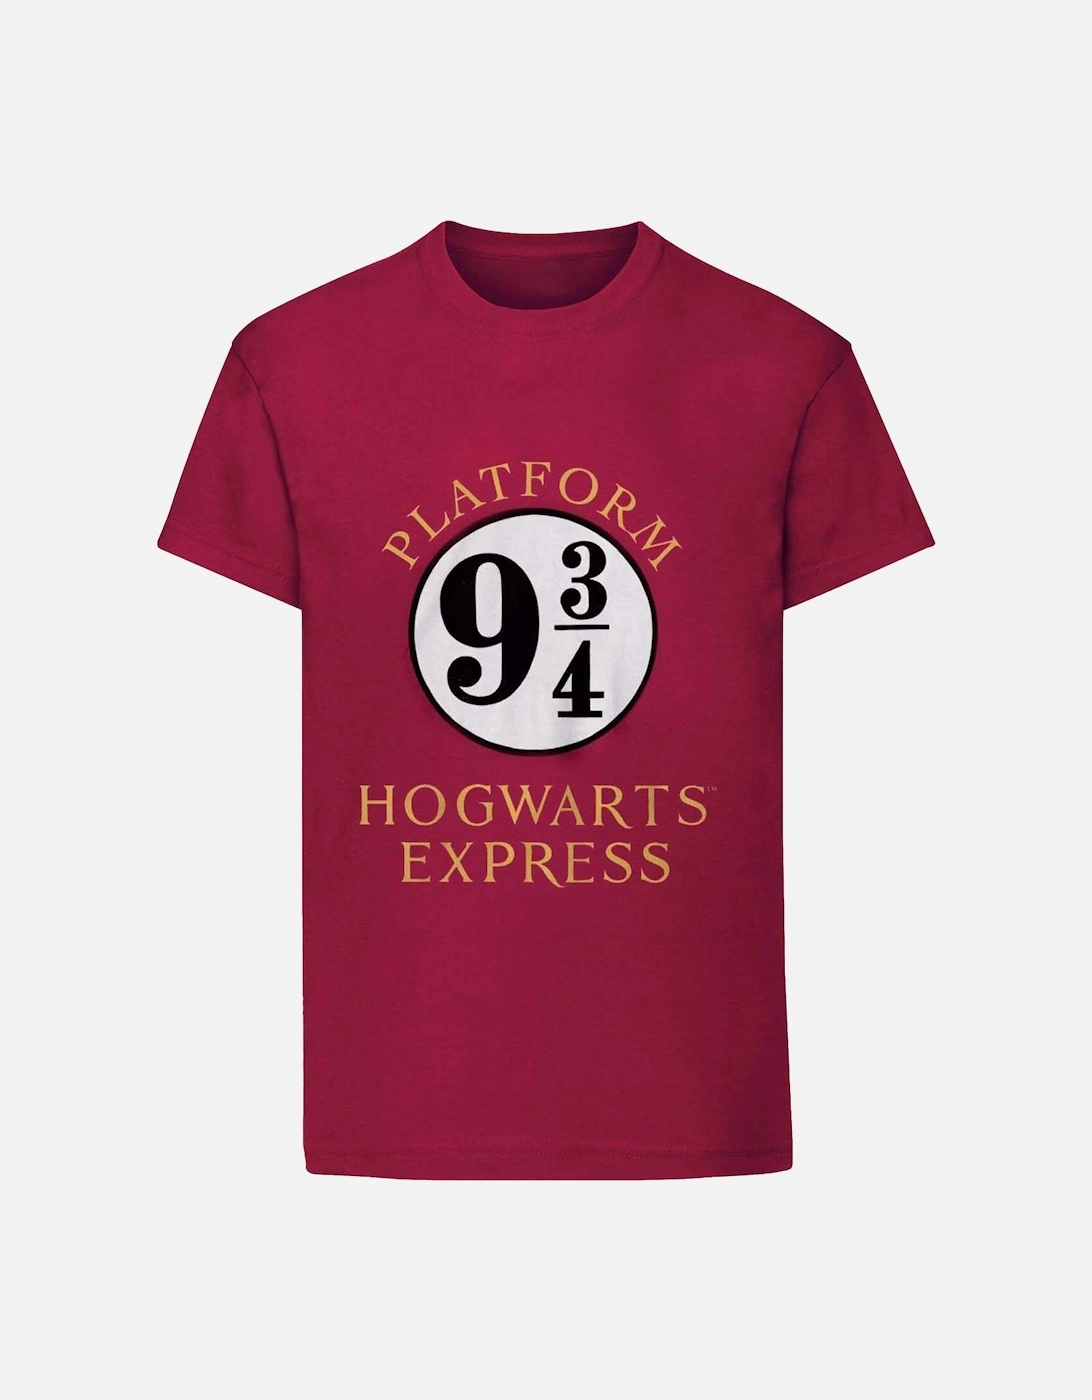 Childrens/Kids Hogwarts Express T-Shirt, 4 of 3